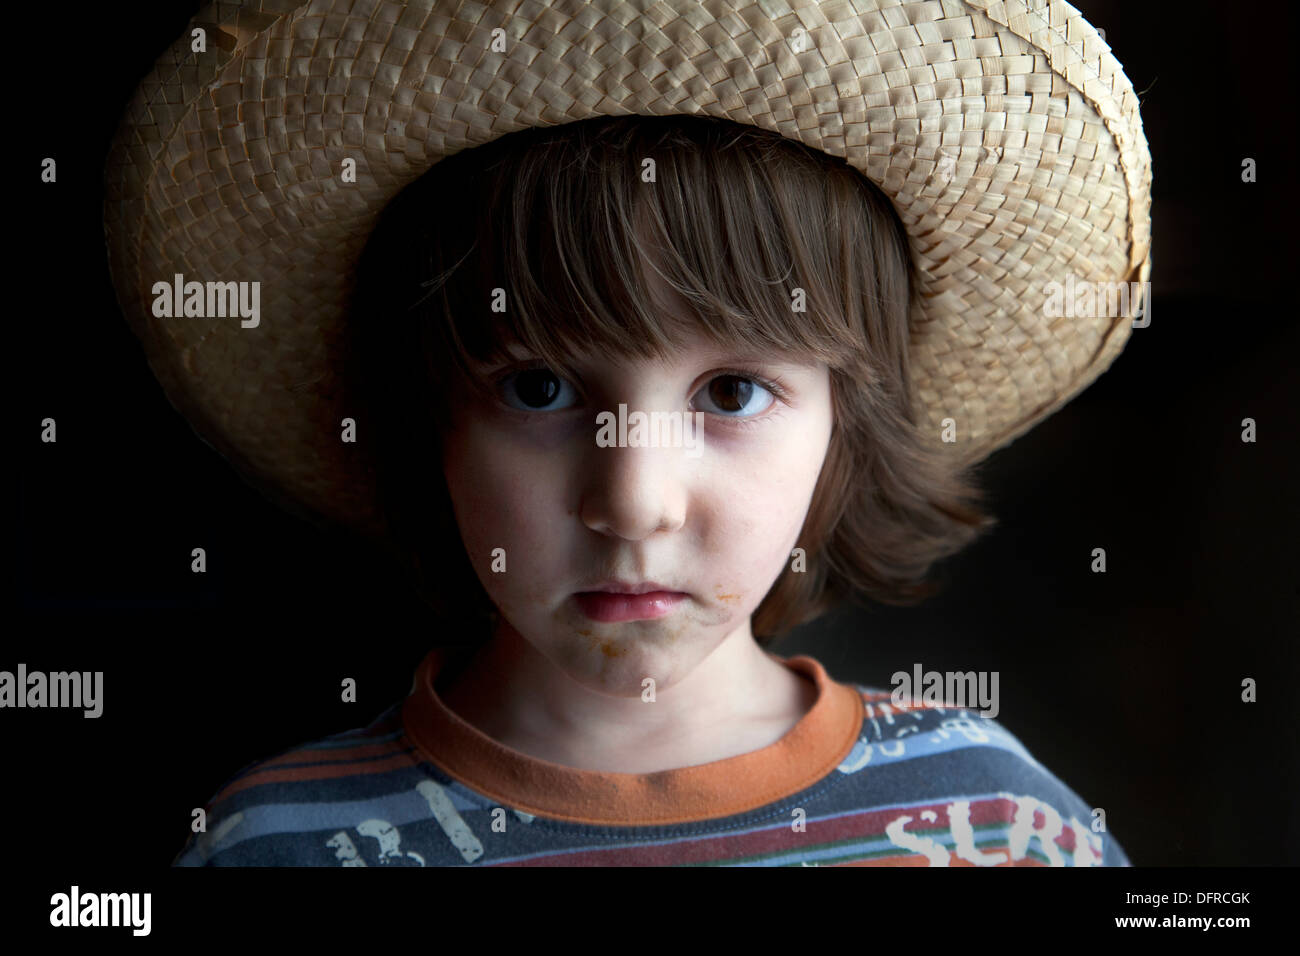 Vier und eine Hälfte Jahr alt junge trägt einen geflochtenen Hut und ernst. Stockfoto